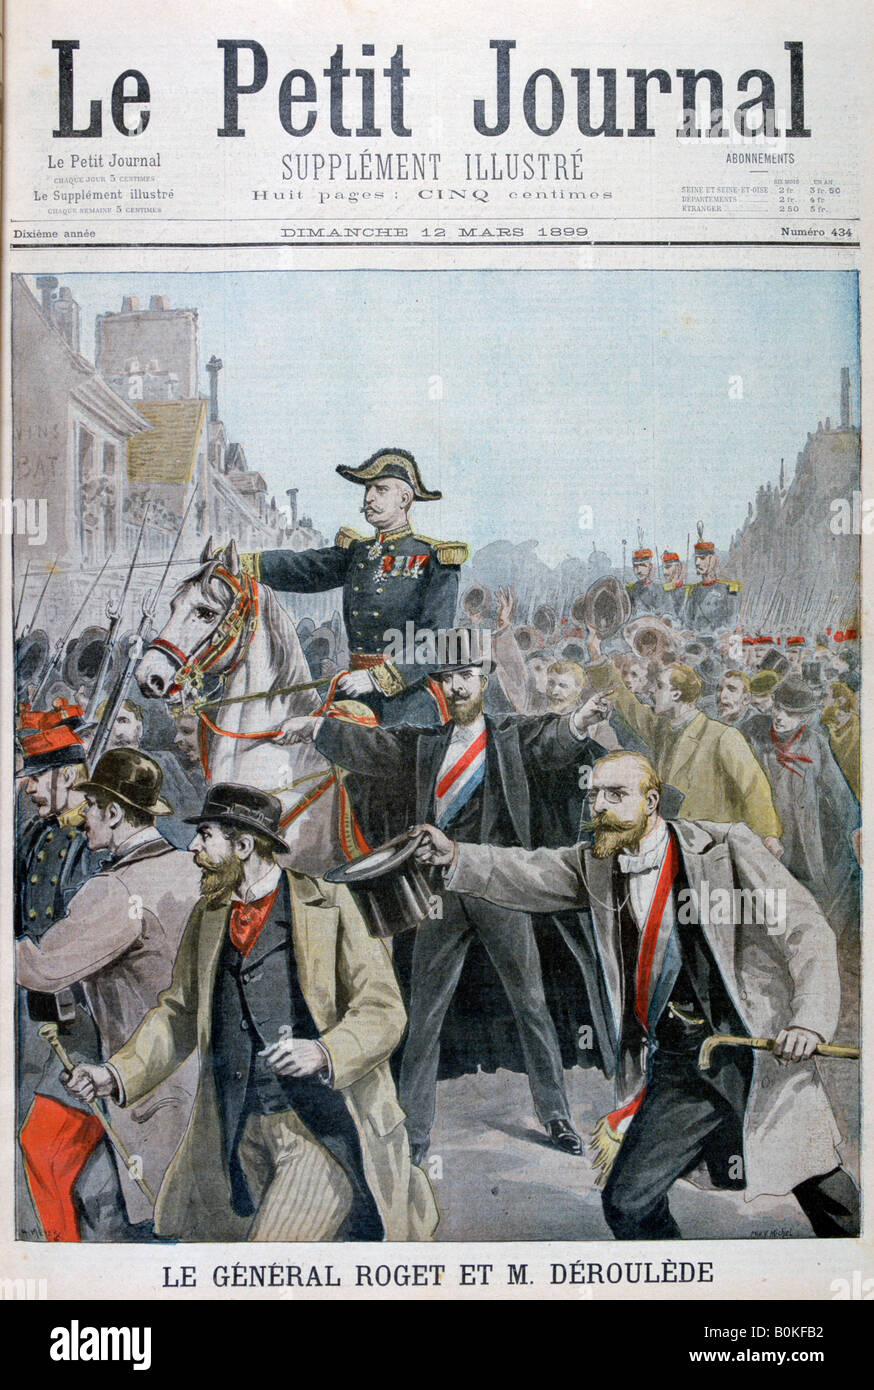 Paul Déroulède grabbing General Roget's bridle, Paris, 1899. Artist: Henri Meyer Stock Photo